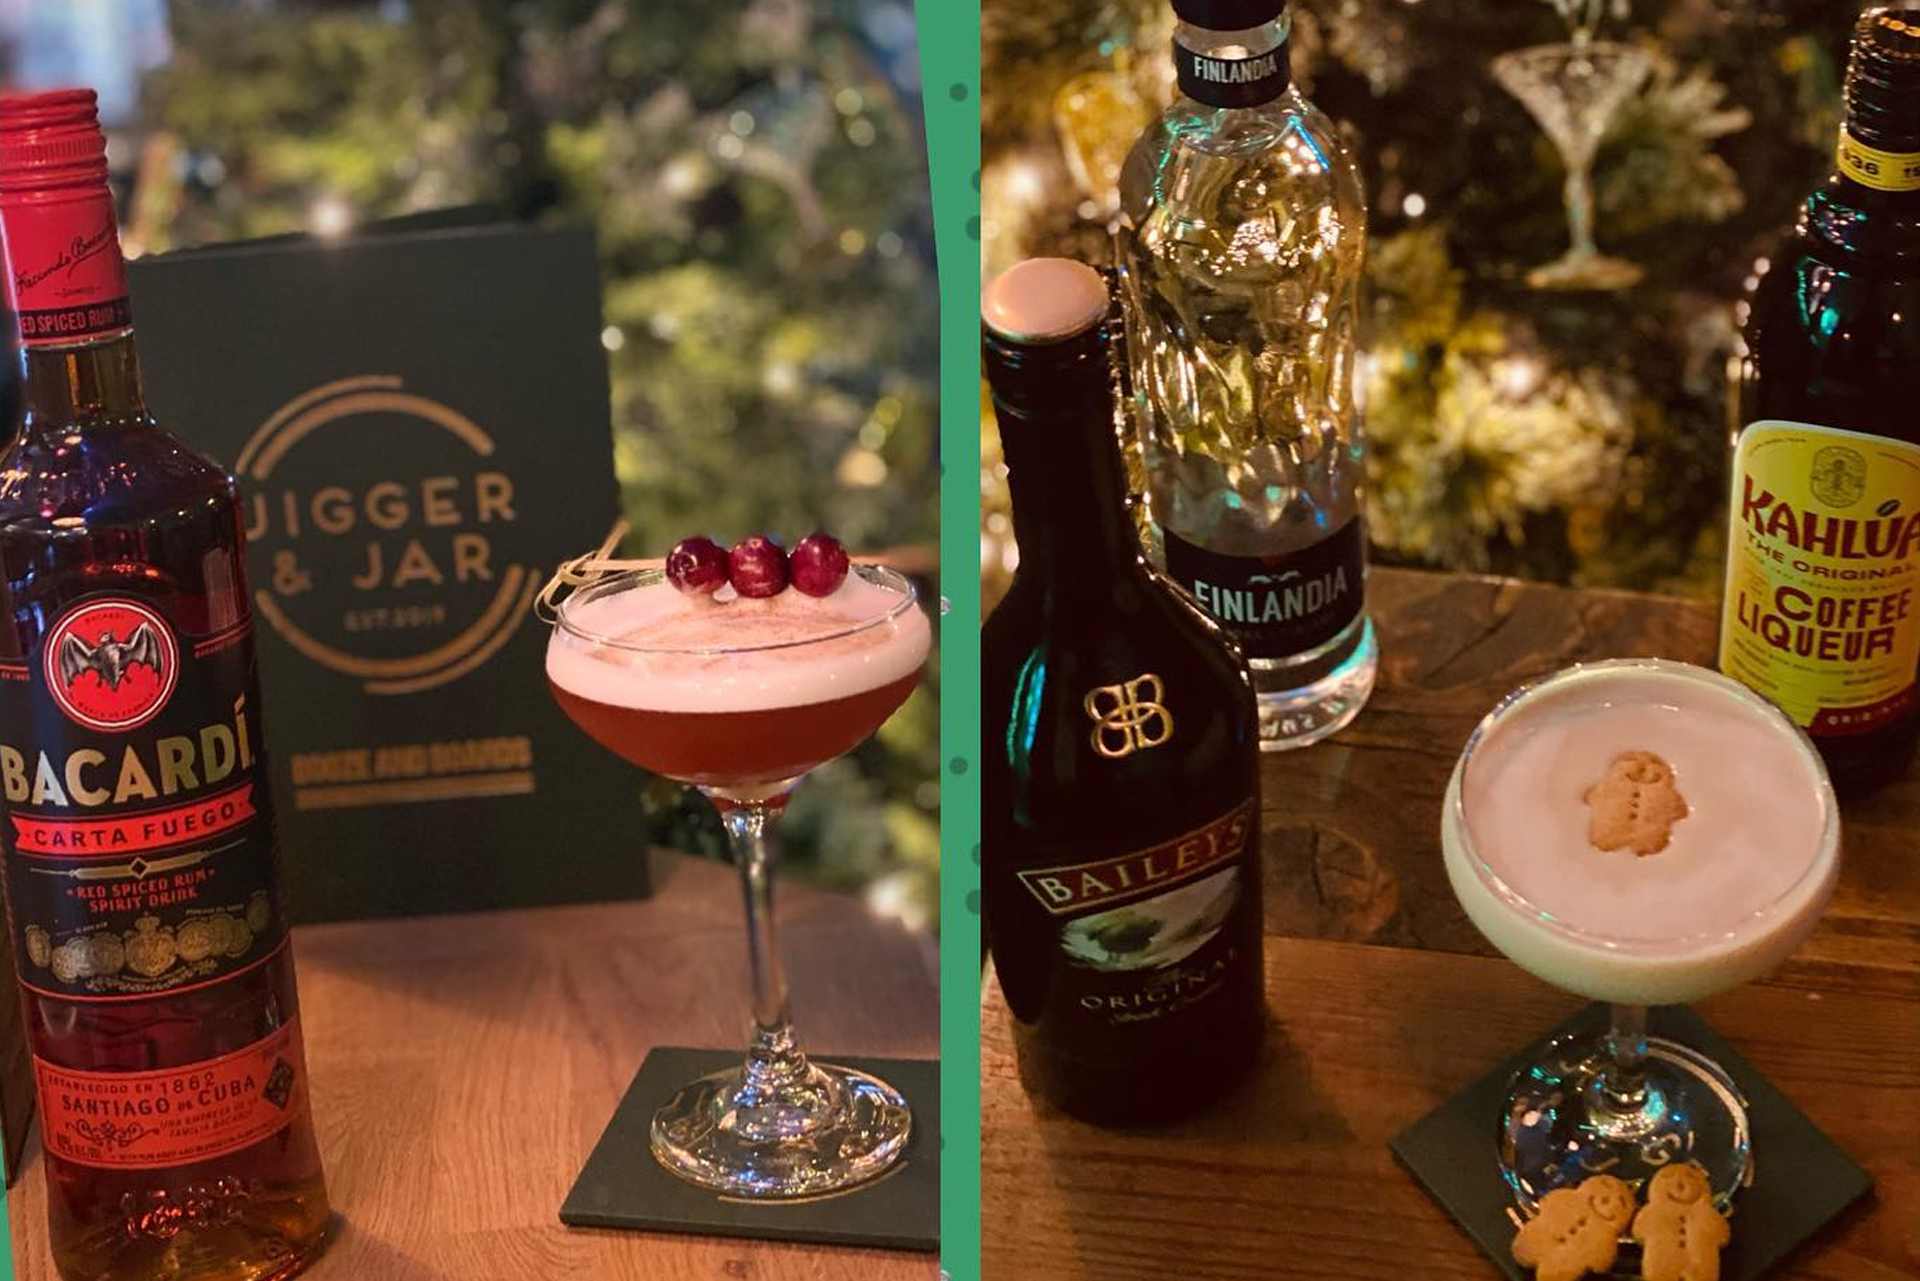 Jigger & Jar cocktails